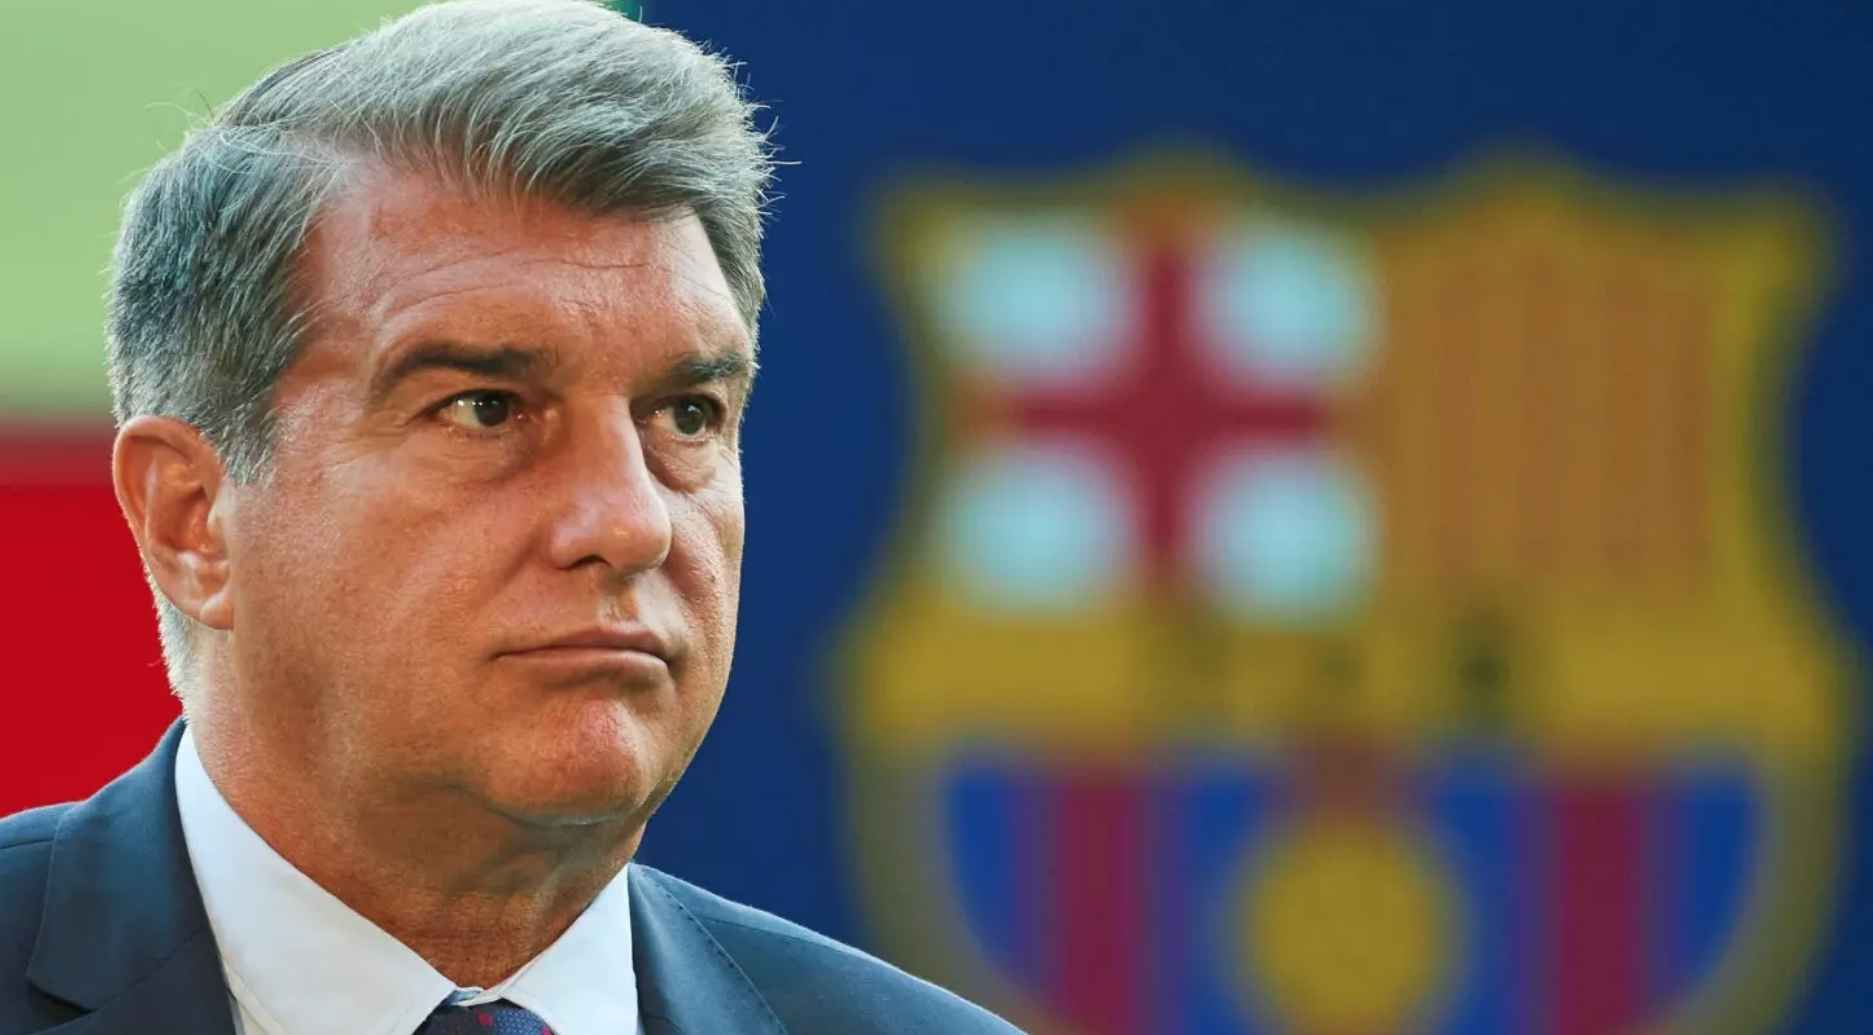 El Barça enfría la alternativa de salir a Bolsa como solución a su crisis